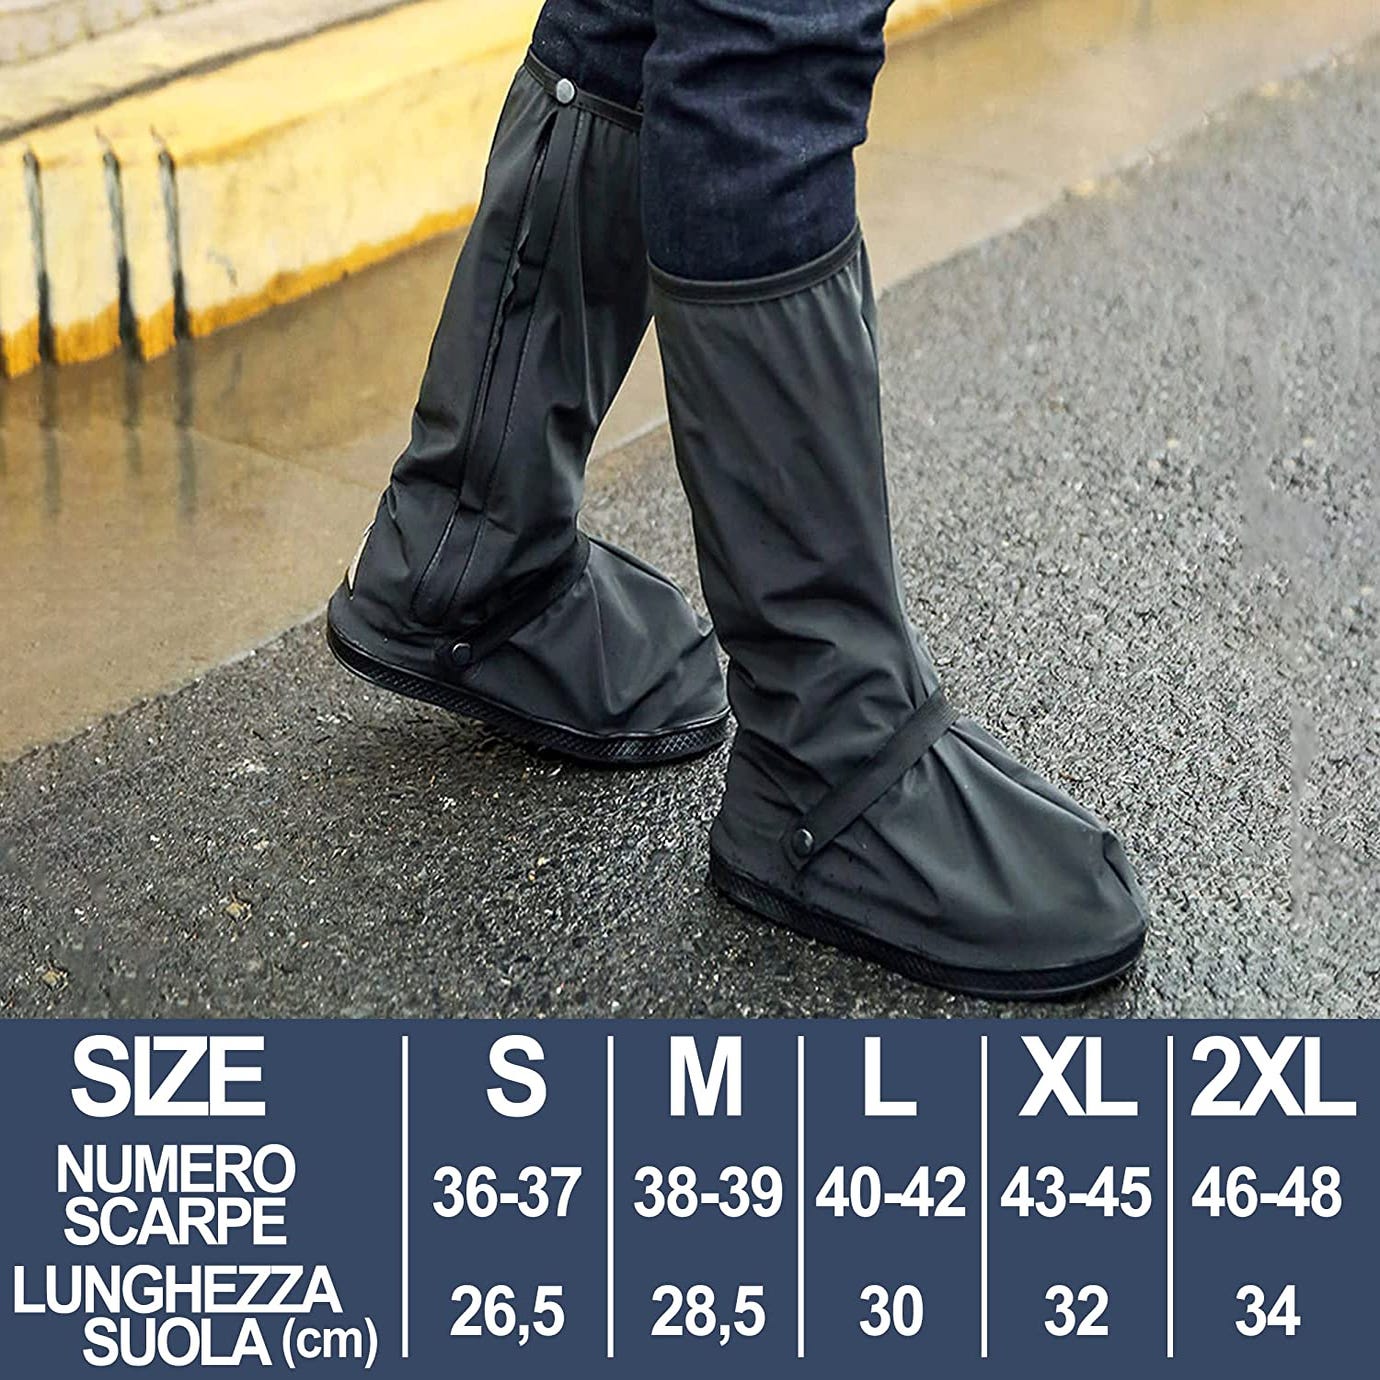 Copriscarpe impermeabile PVC con cerniera unisex antiscivolo pieghevole e  riutilizzabile per pioggia o neve Tg M 38-39